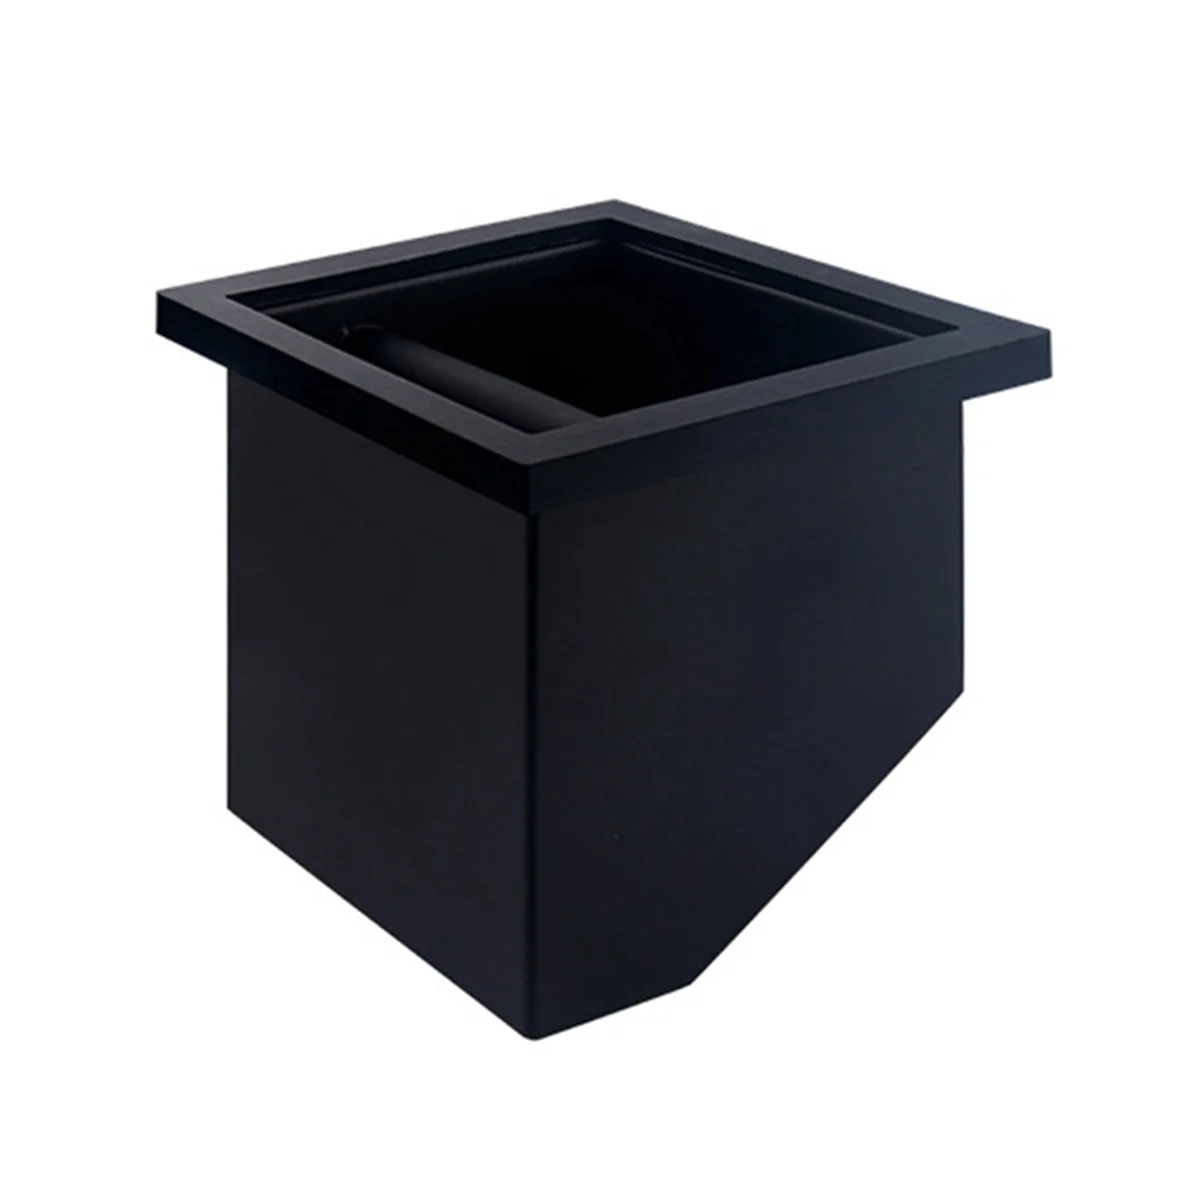 Коробка для кофейной гущи, коробка для взбивания со встроенным наклонным отверстием, коробка для взбивания кофейных отходов, Коробка для взбивания кофейного порошка в баре